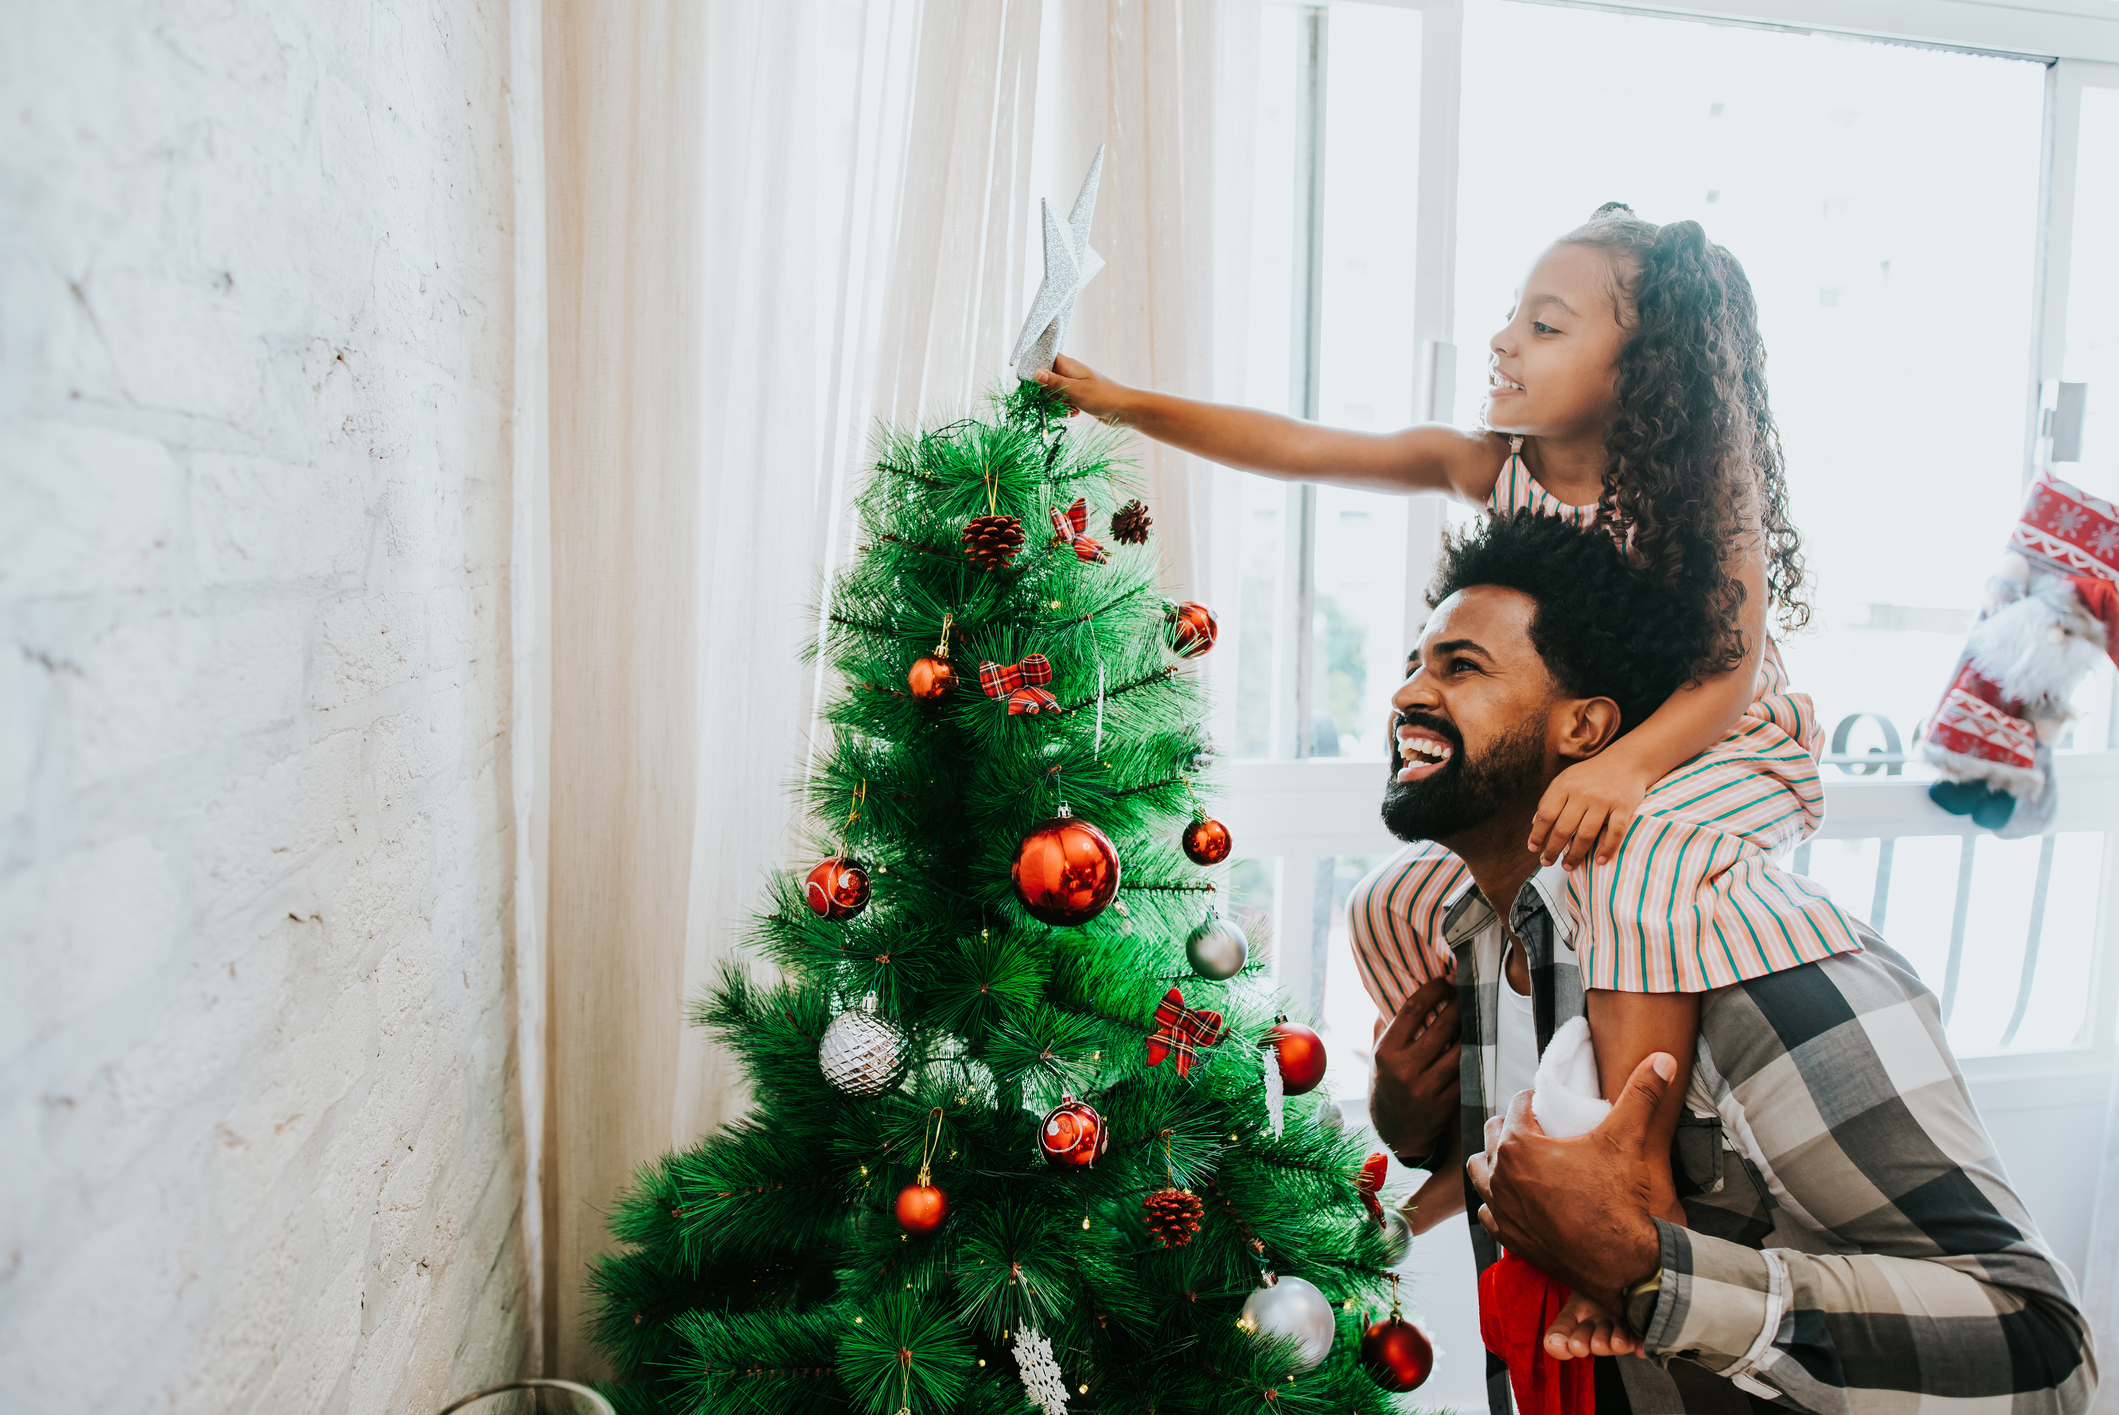 Imagem de pai e filha decorando a árvore de Natal.